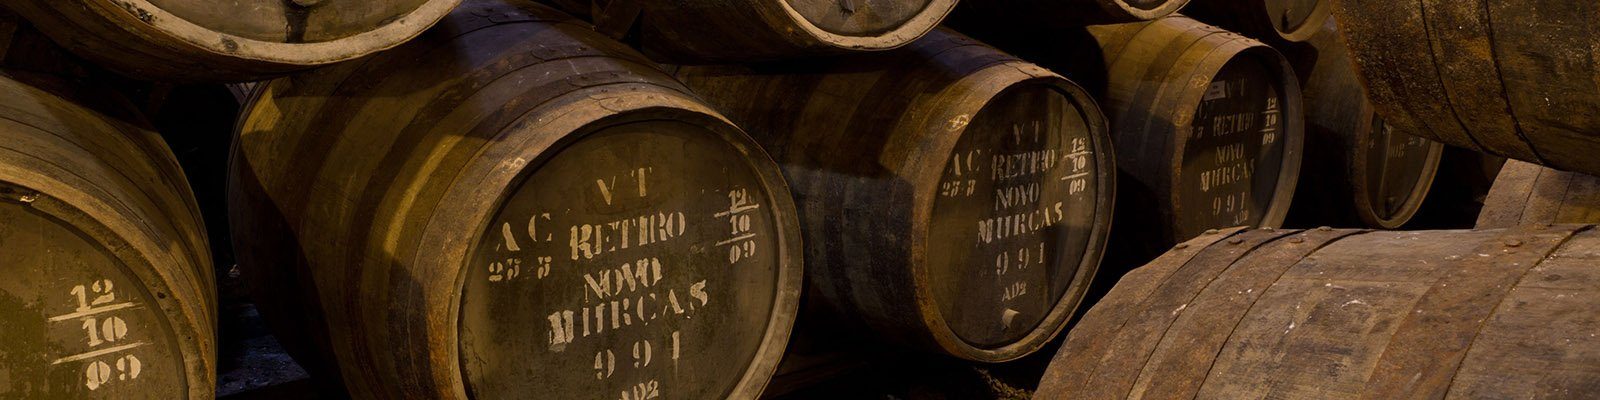 La nostra collezione di Portogallo - Trovatelo da Onshore Cellars, il vostro fornitore di vini per yacht